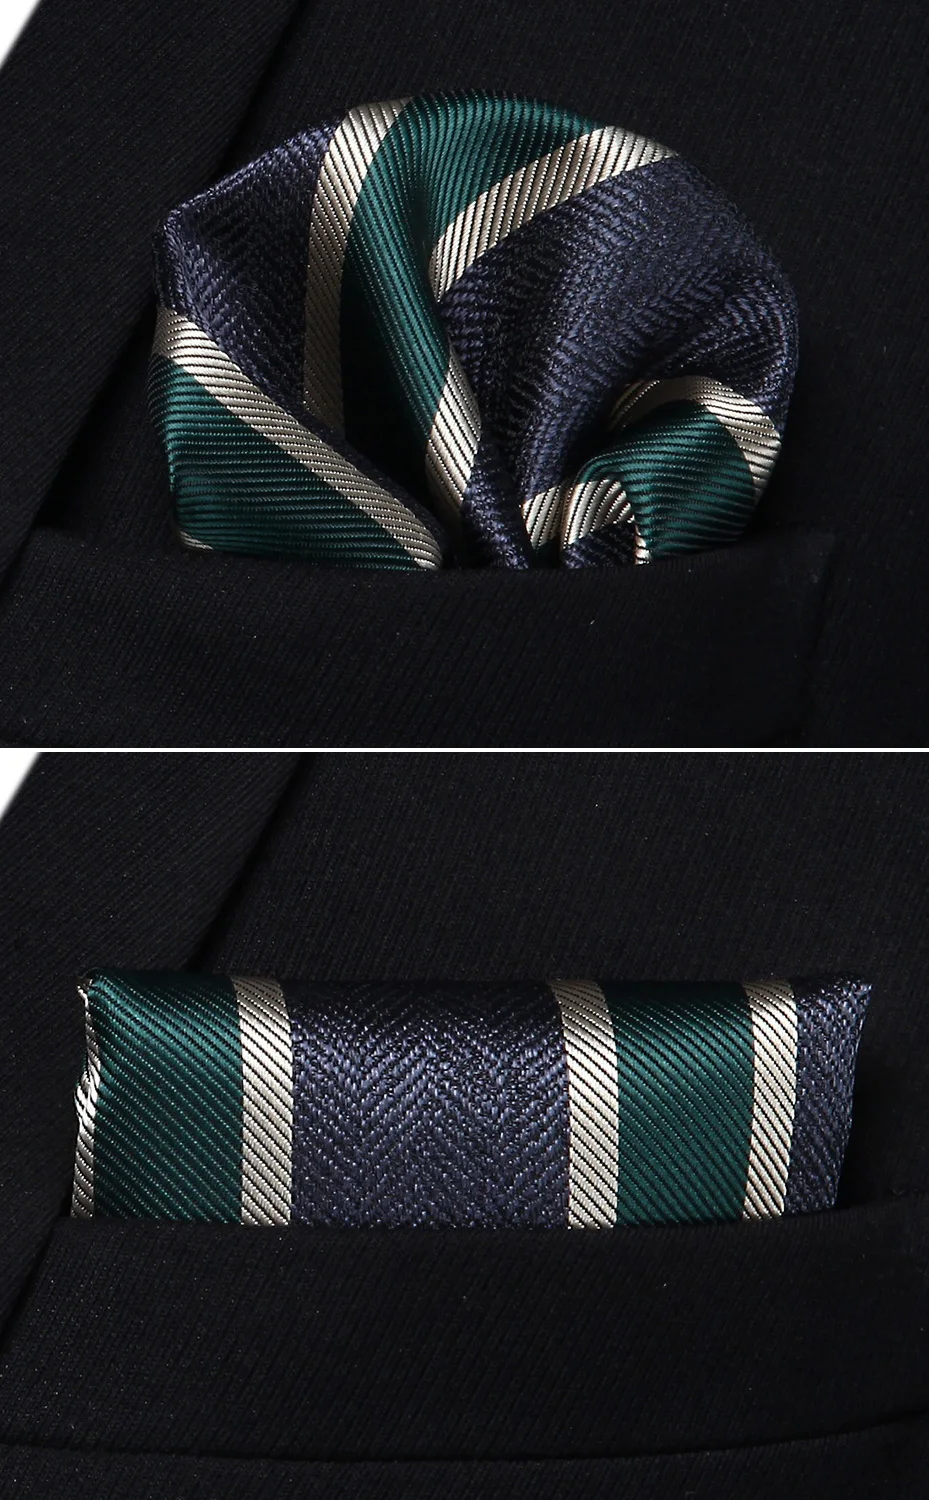 Вечерние свадебные классические модные платок галстук тканые Для мужчин галстук Темно-синие зеленый полосатый галстук платок Набор# TS802G8S